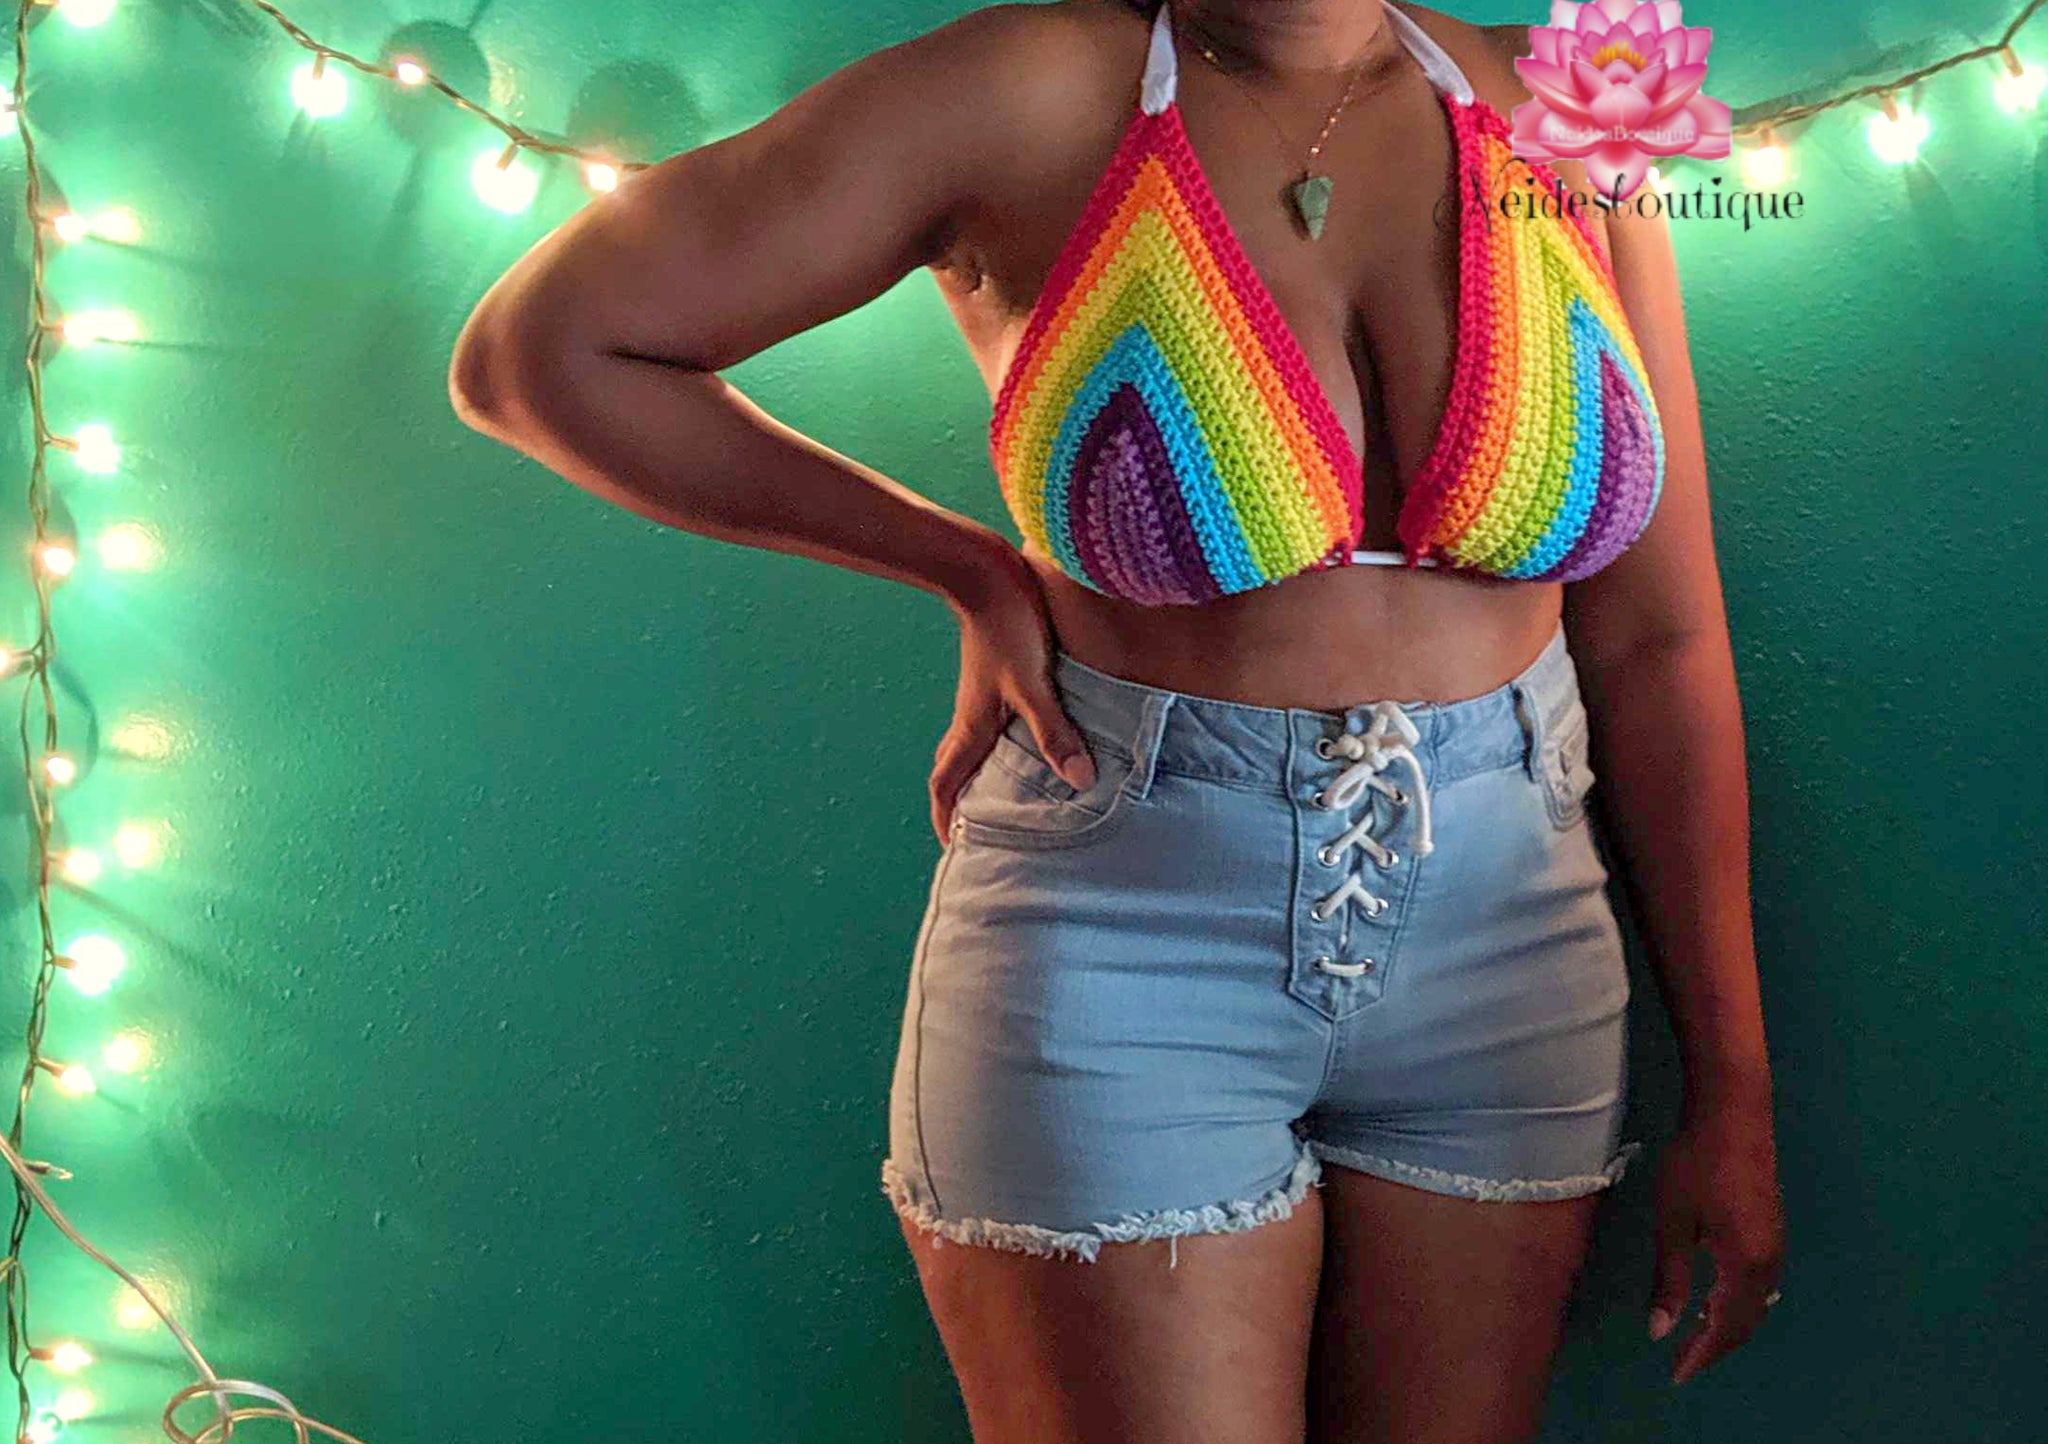  Rainbow Bikini